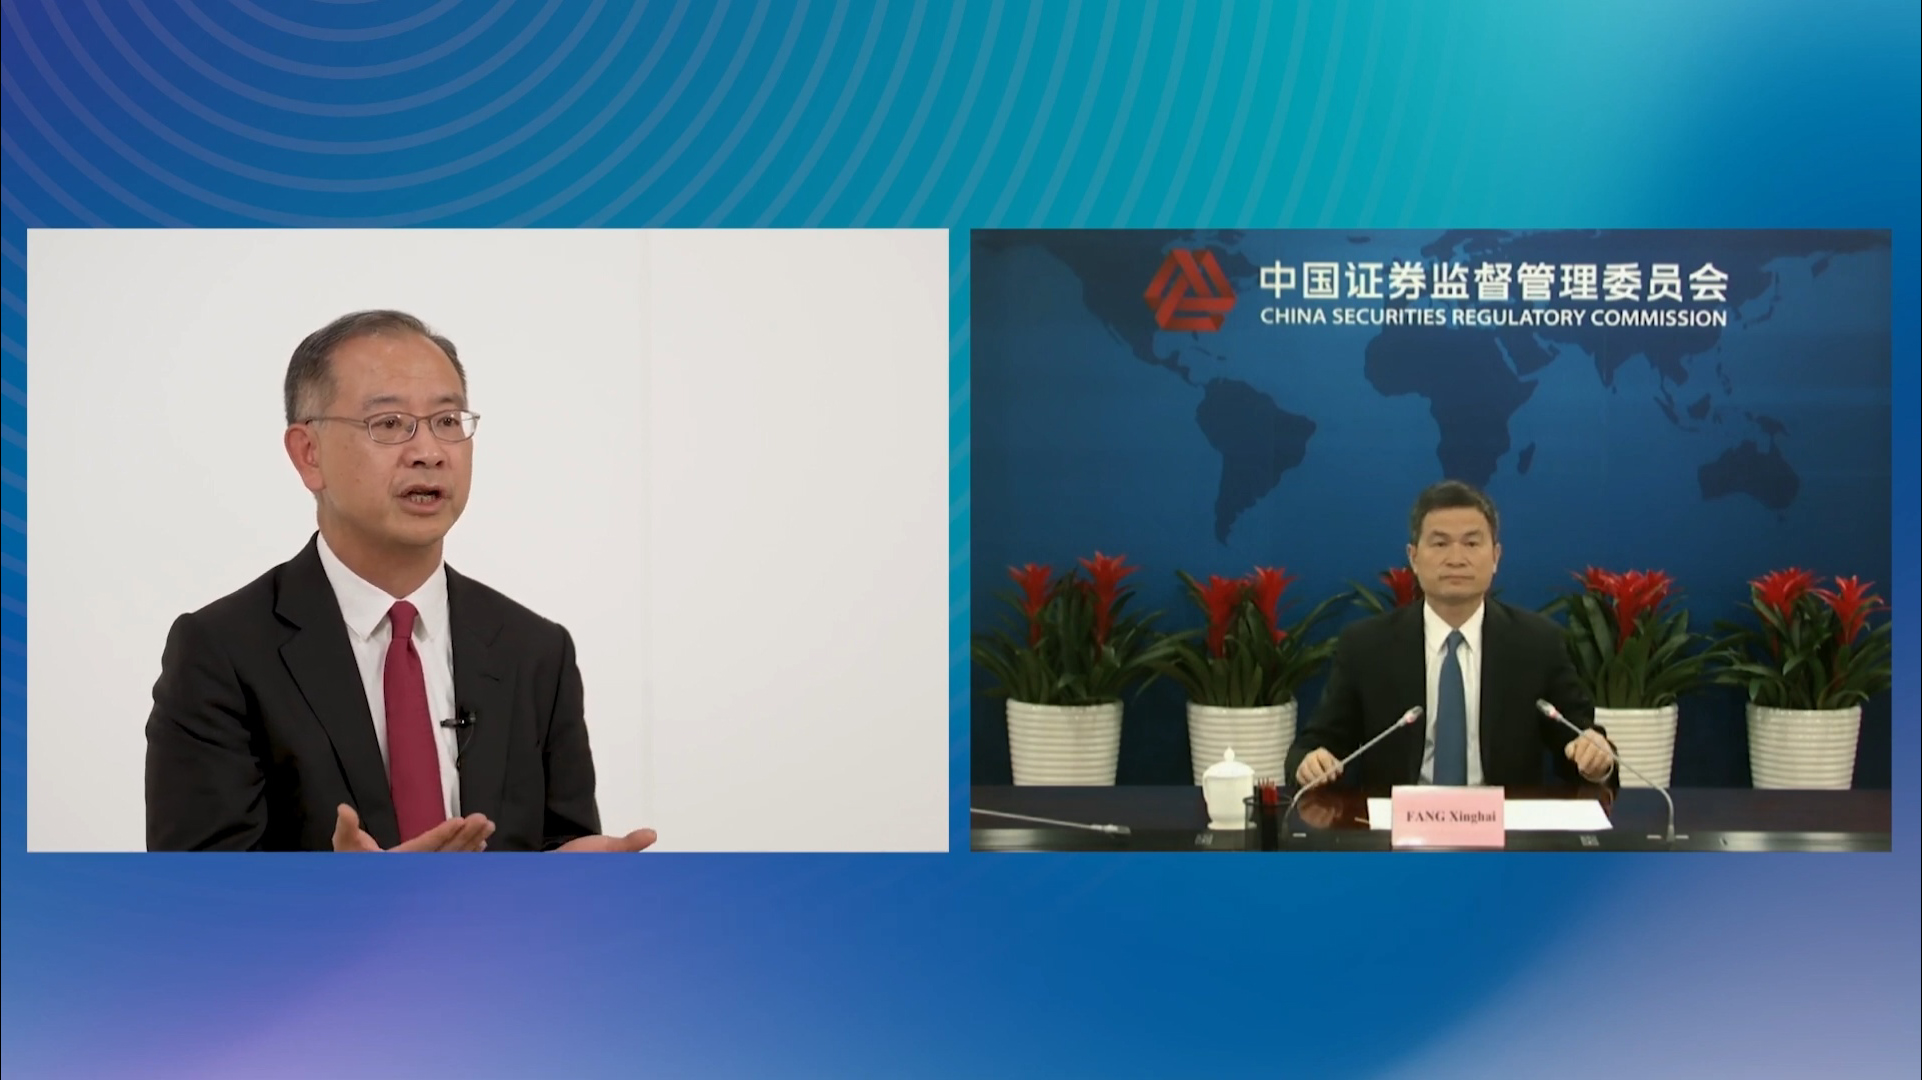 (左至右) 香港金融管理局總裁余偉文; 中國證券監督管理委員會副主席方星海